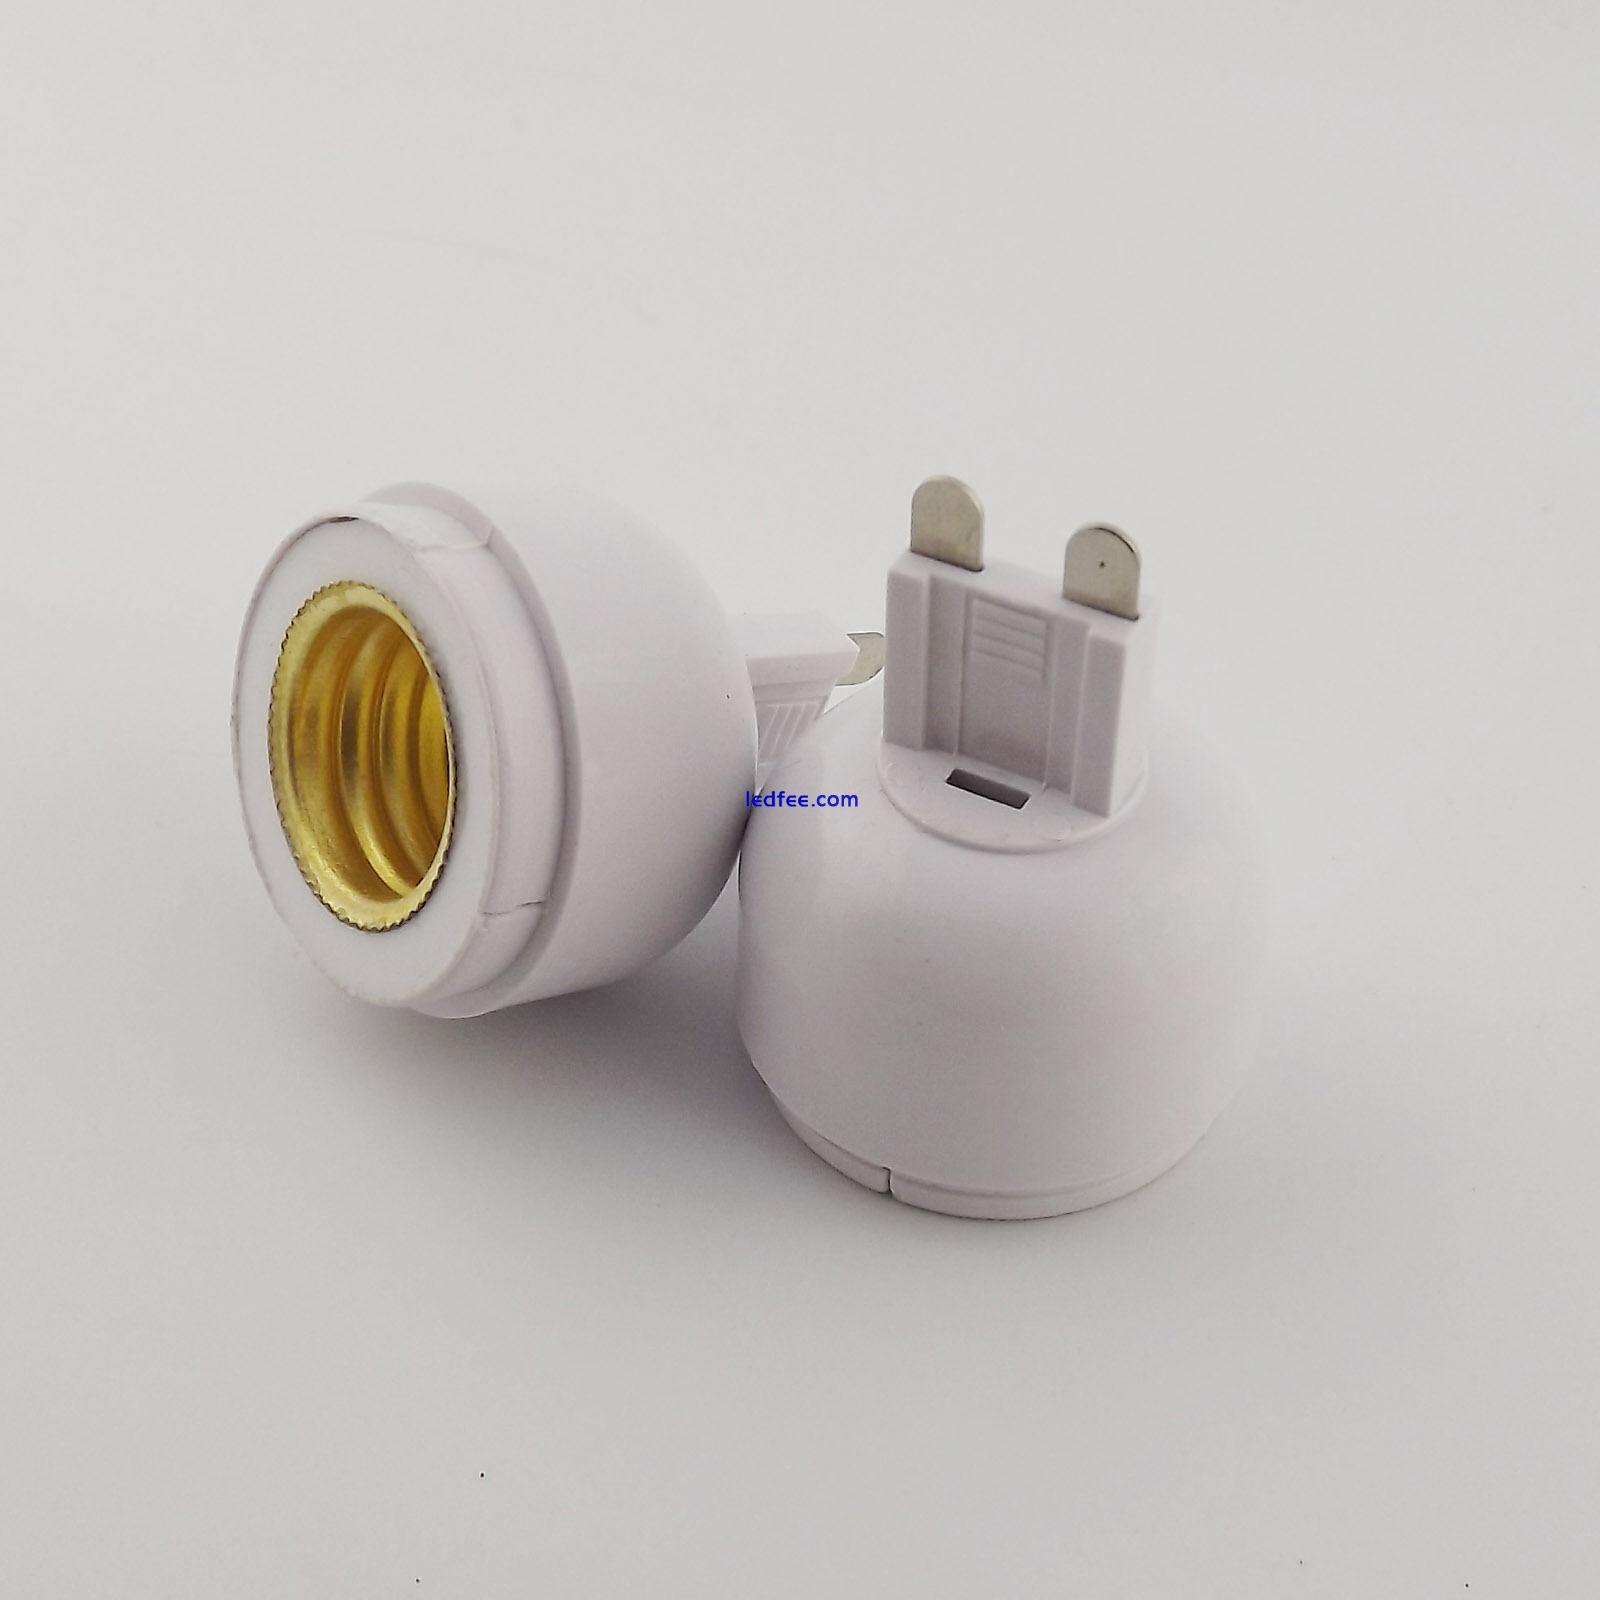 LED Lamp Adapter Converter G9 To E17 Socket Base Halogen CFL Light Thread Bulb 2 